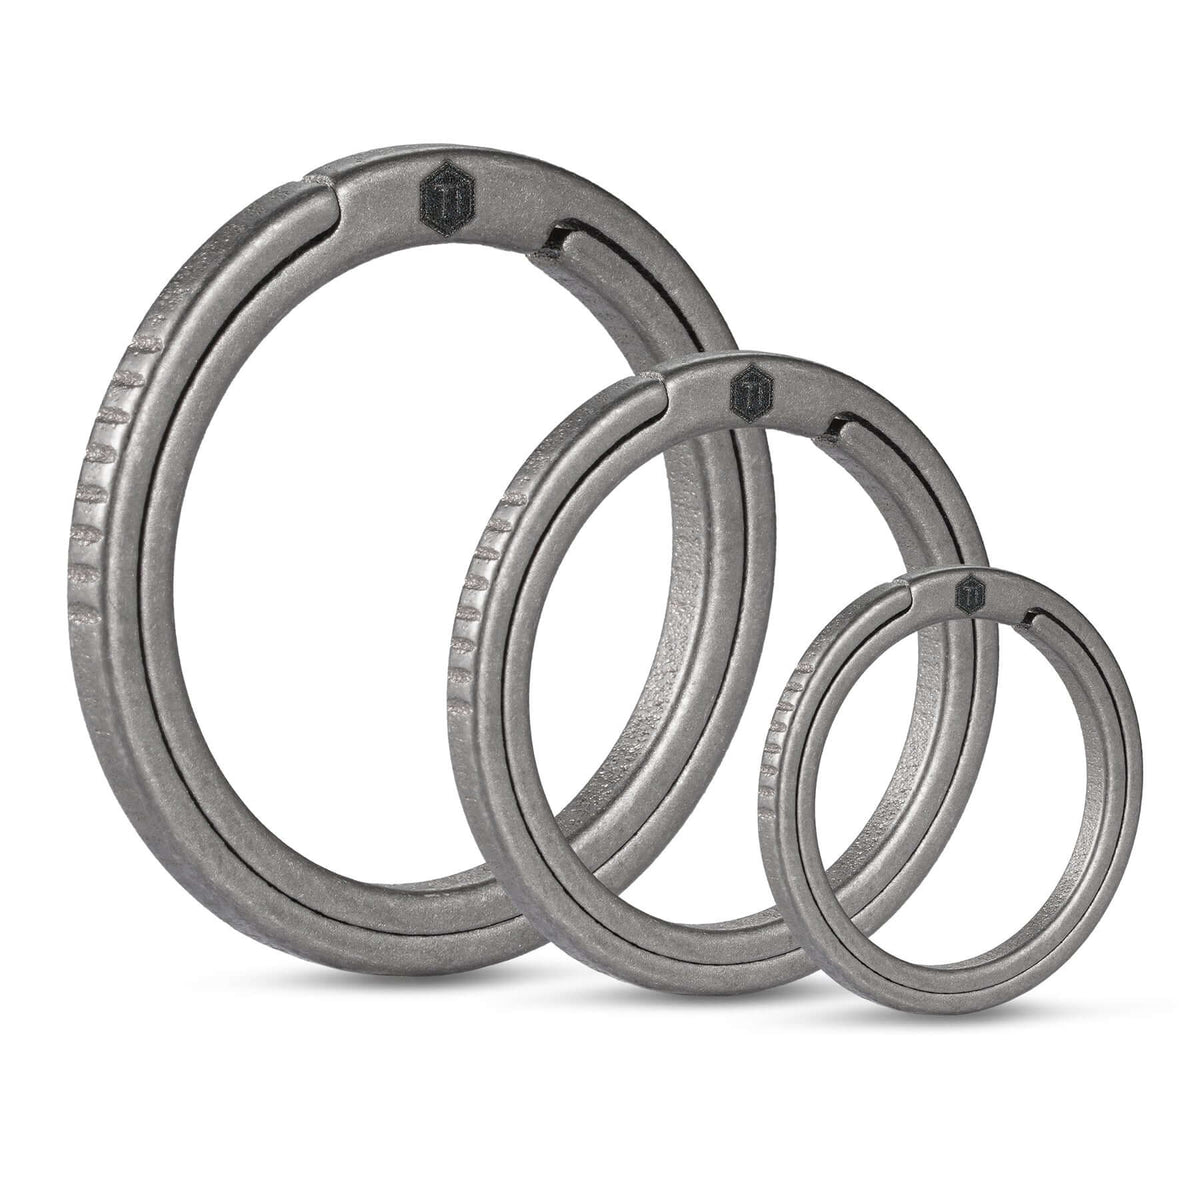 KA02 Titanium Alloy Key Ring Set (3 Pcs Set)